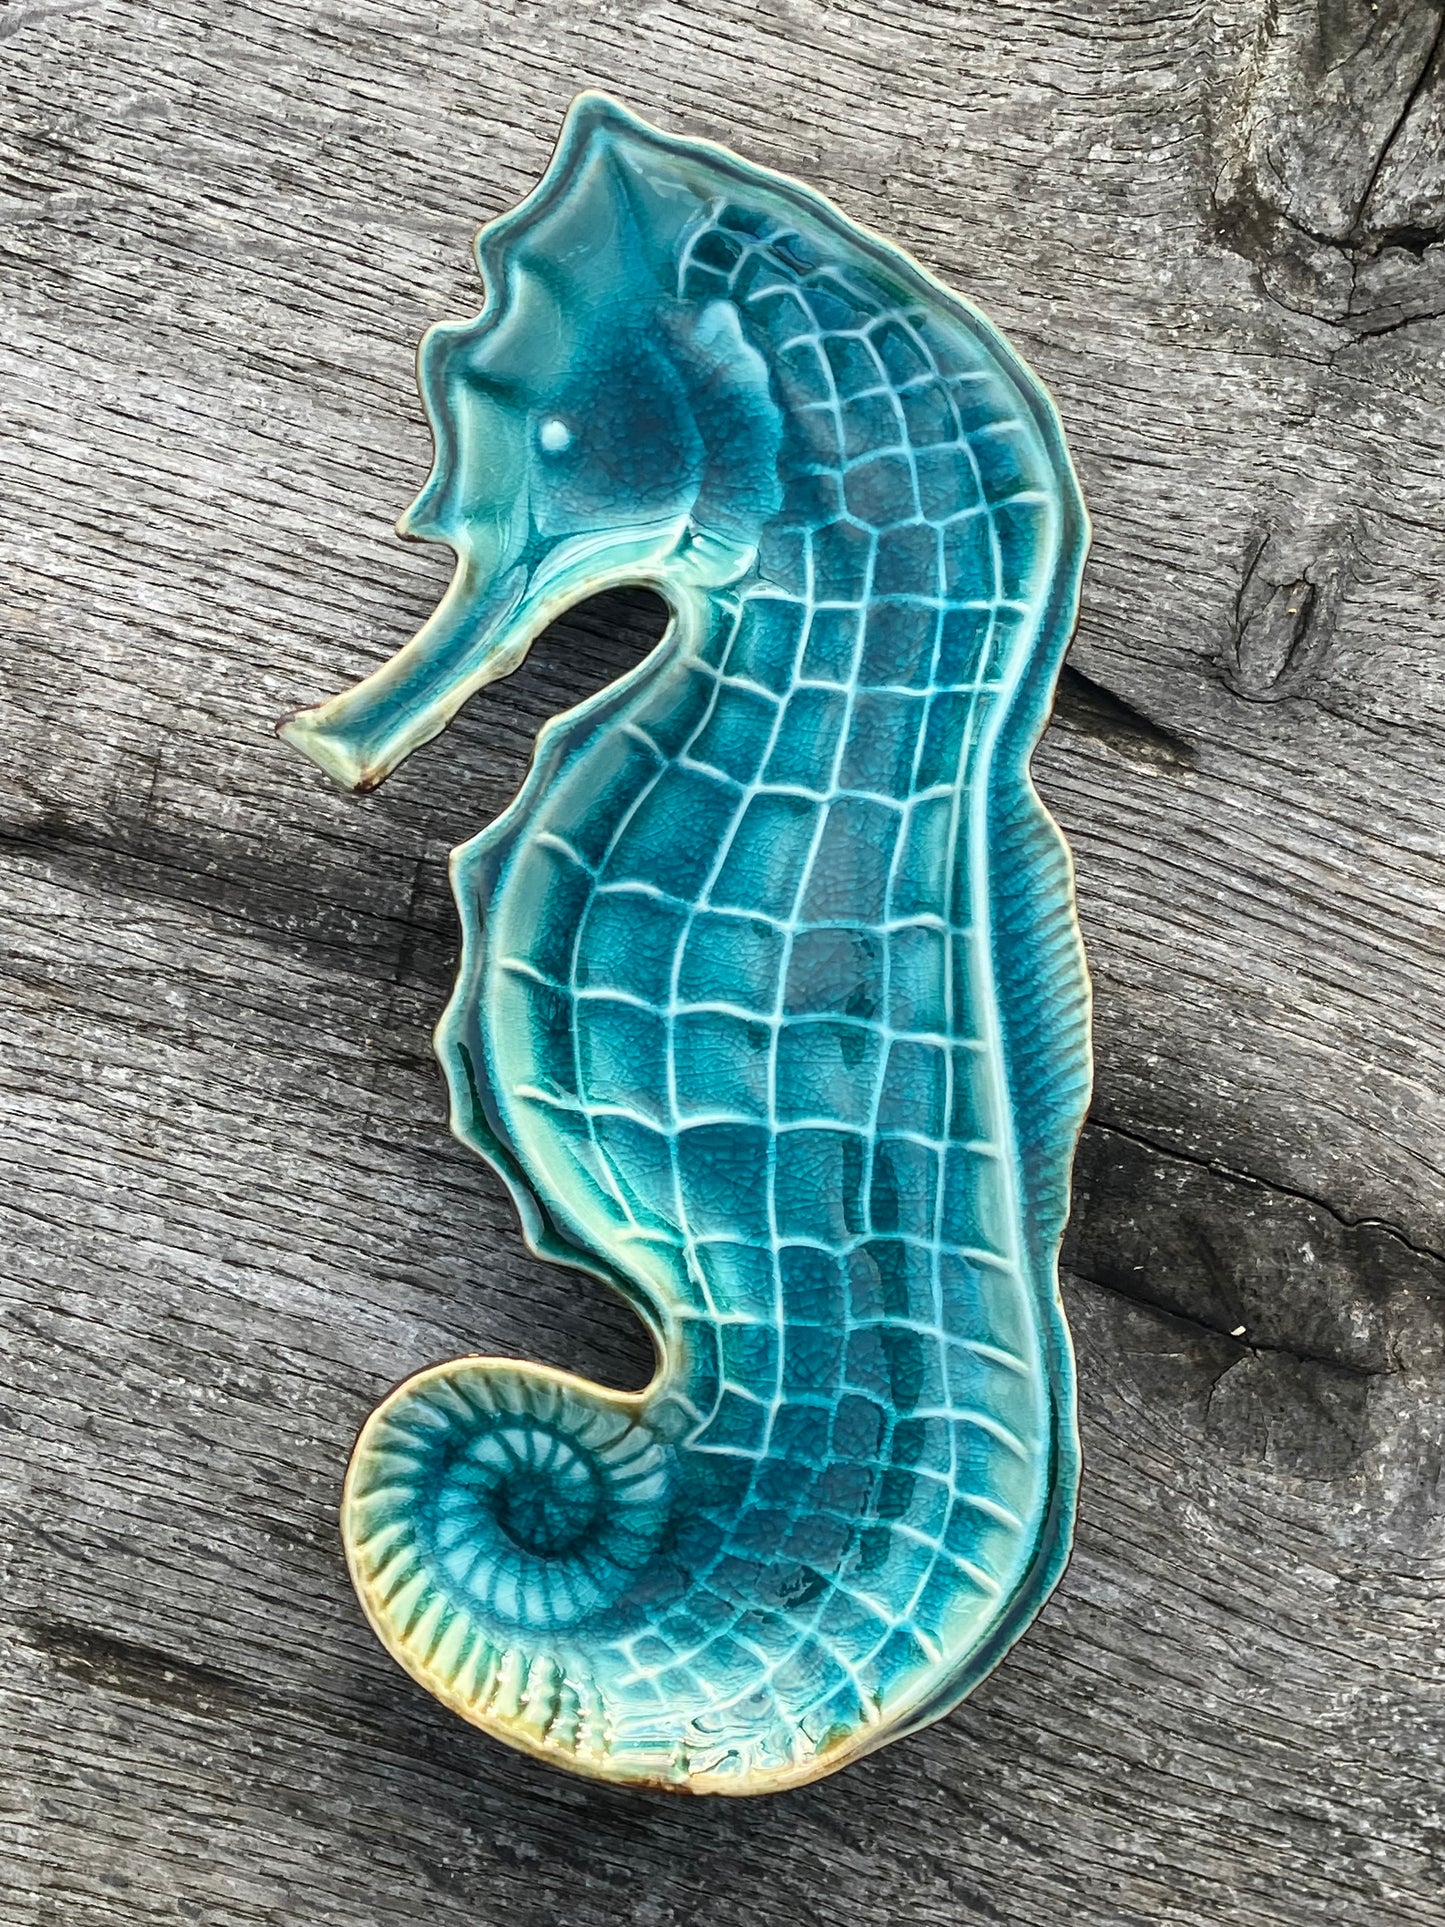 Seahorse ceramic plate